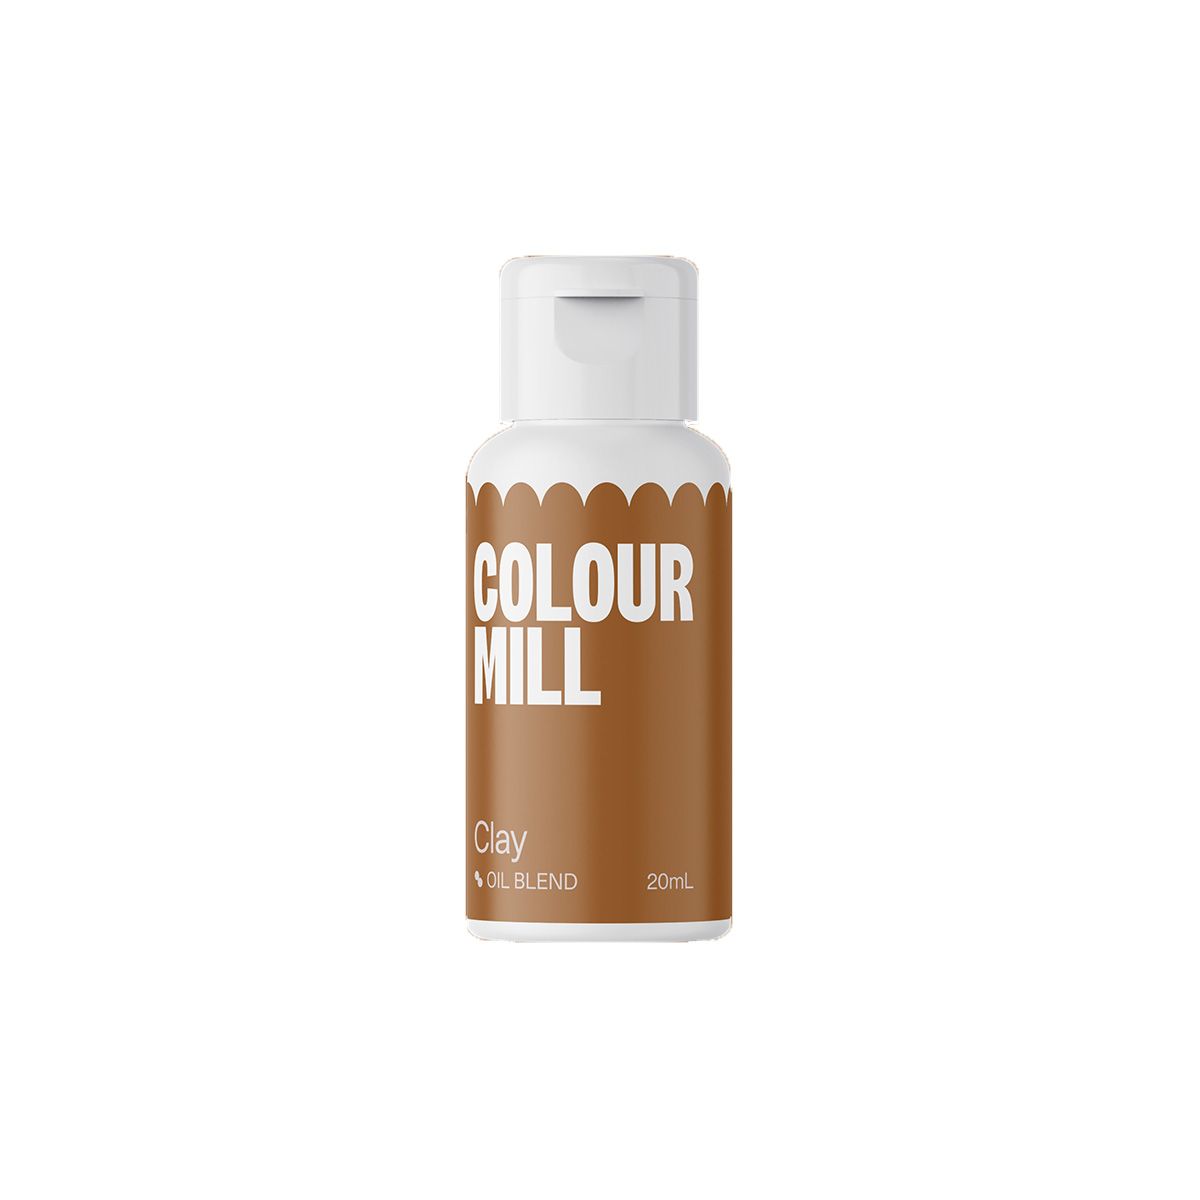 Colour mill's ätbara oljebaserade färg Clay i brunt